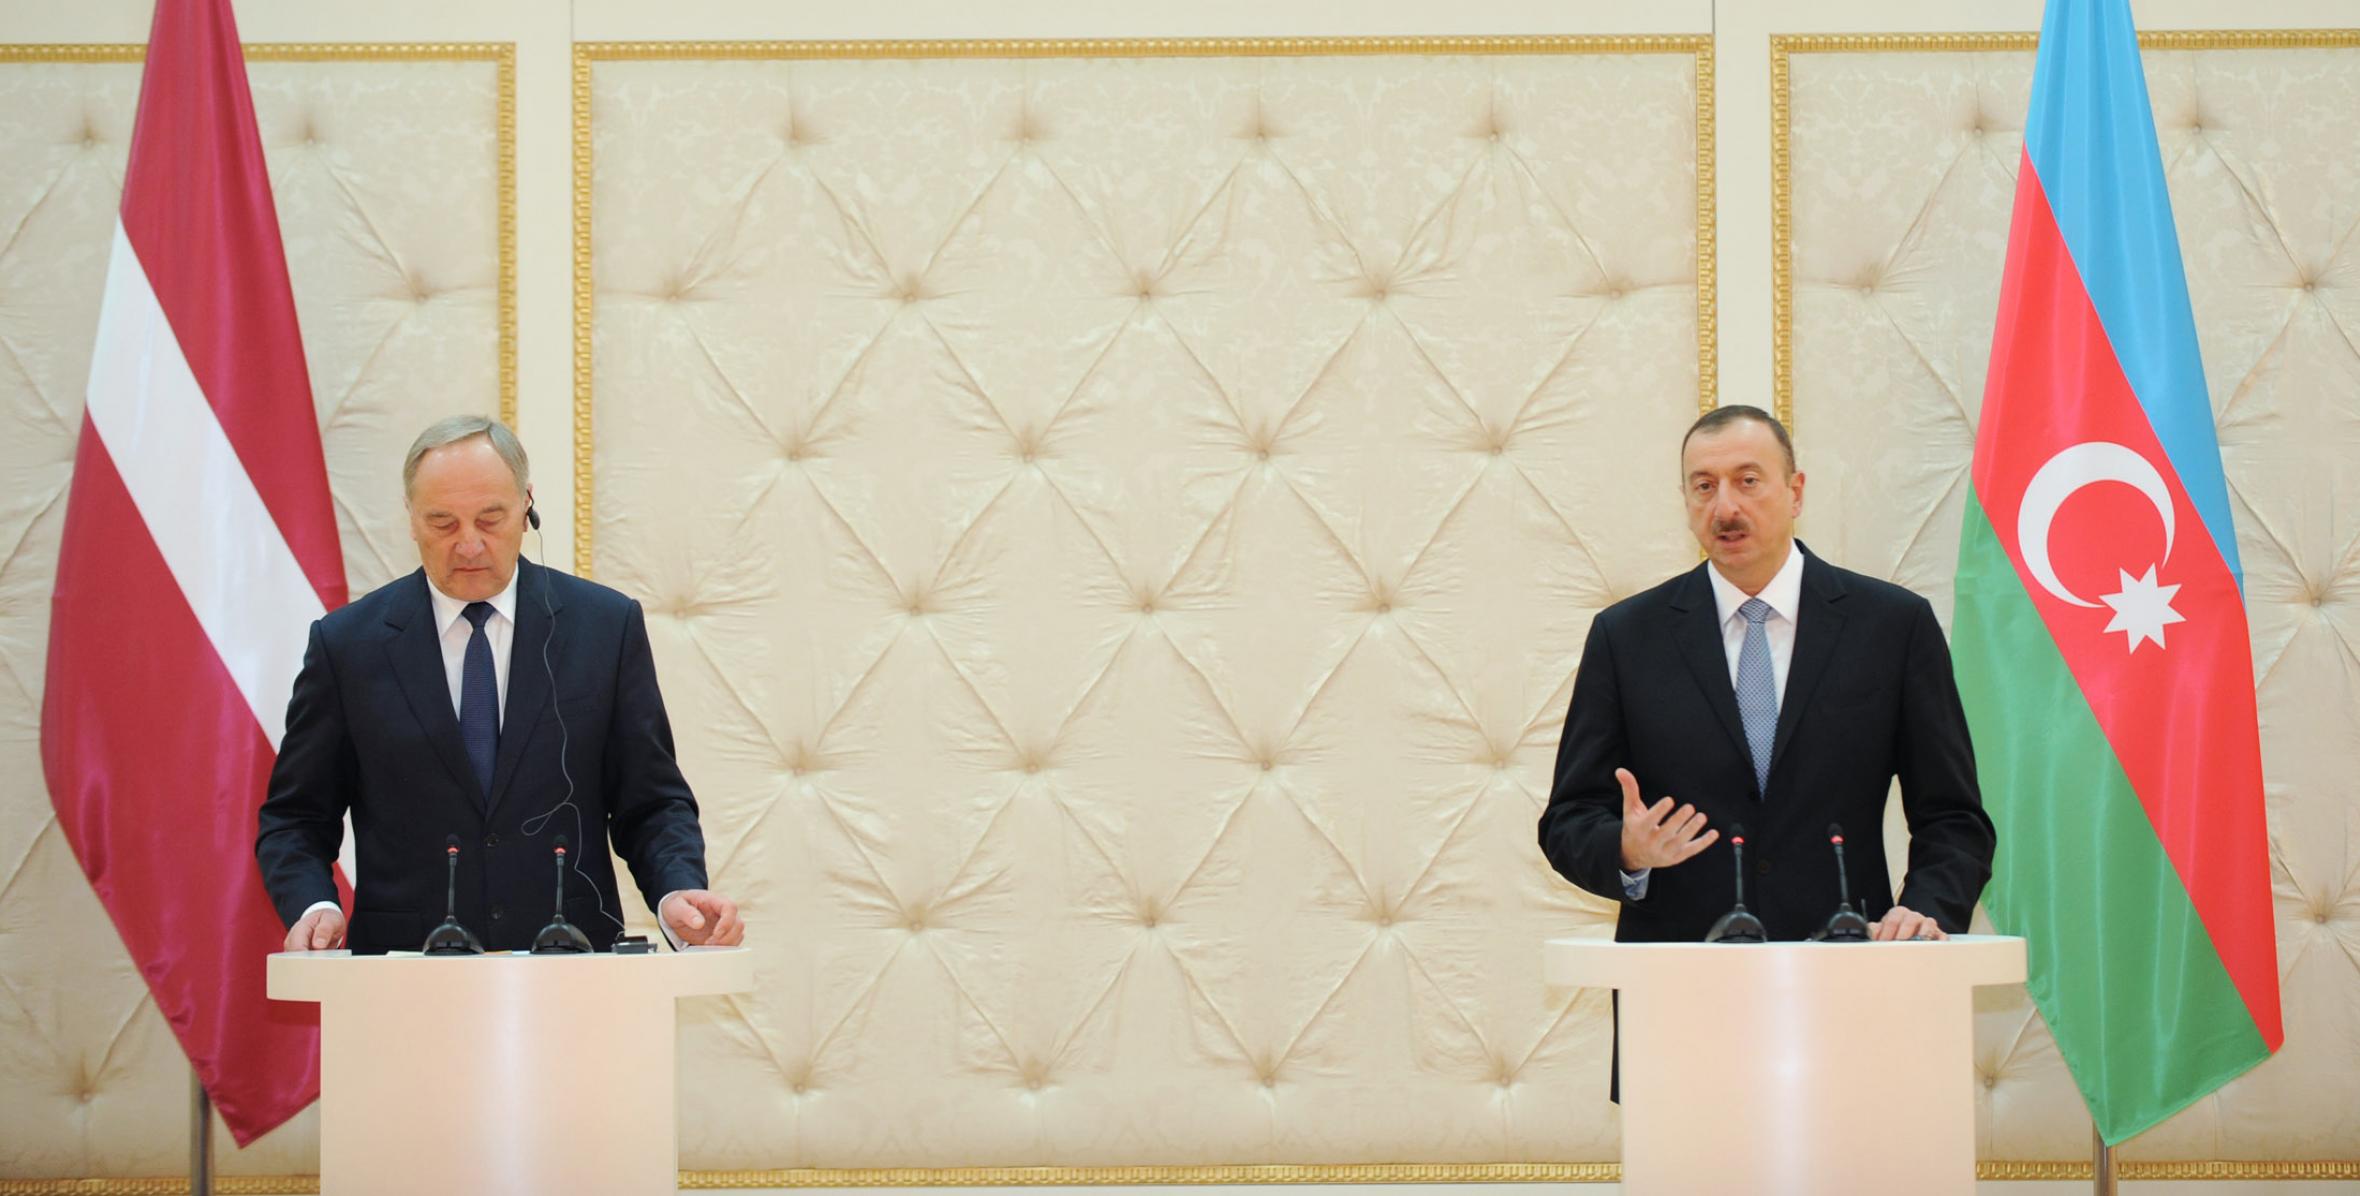 Состоялась пресс-конференция Ильхама Алиева и Президента Латвии Андриса Берзиньша